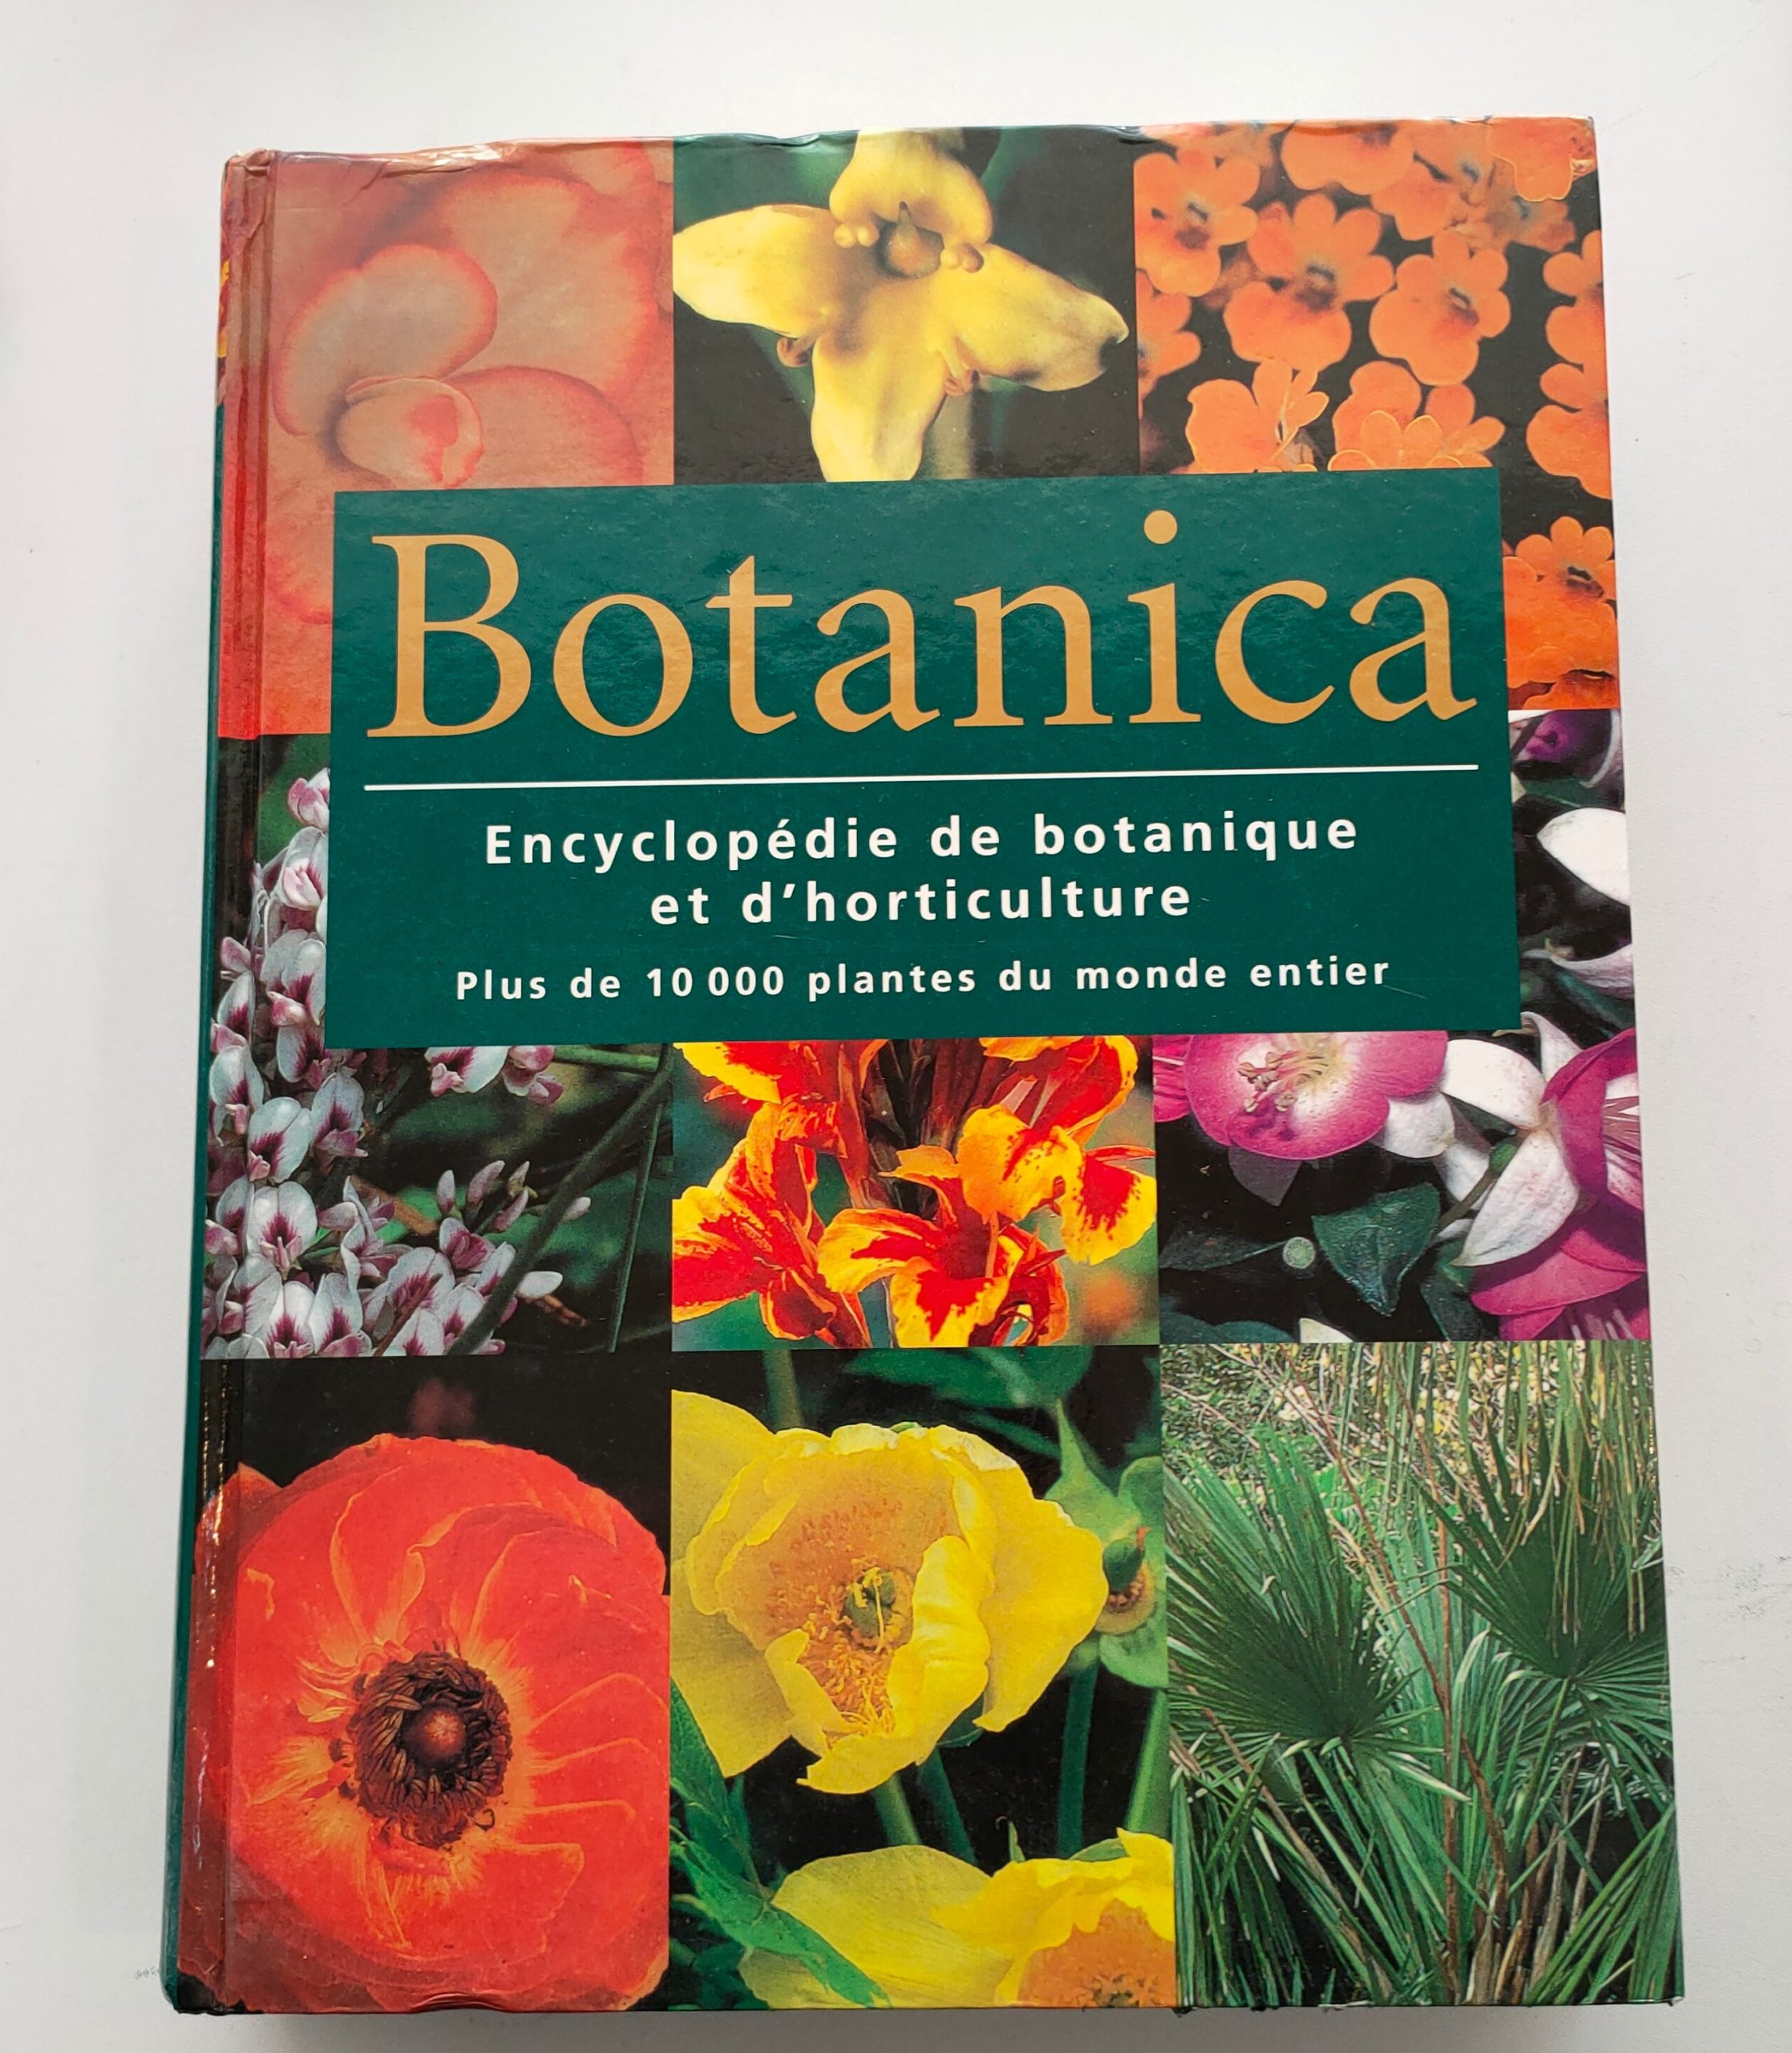 Featured image for “Botanica, Encyclopédie de botanique et d'horticulture / Könemann / 2001”